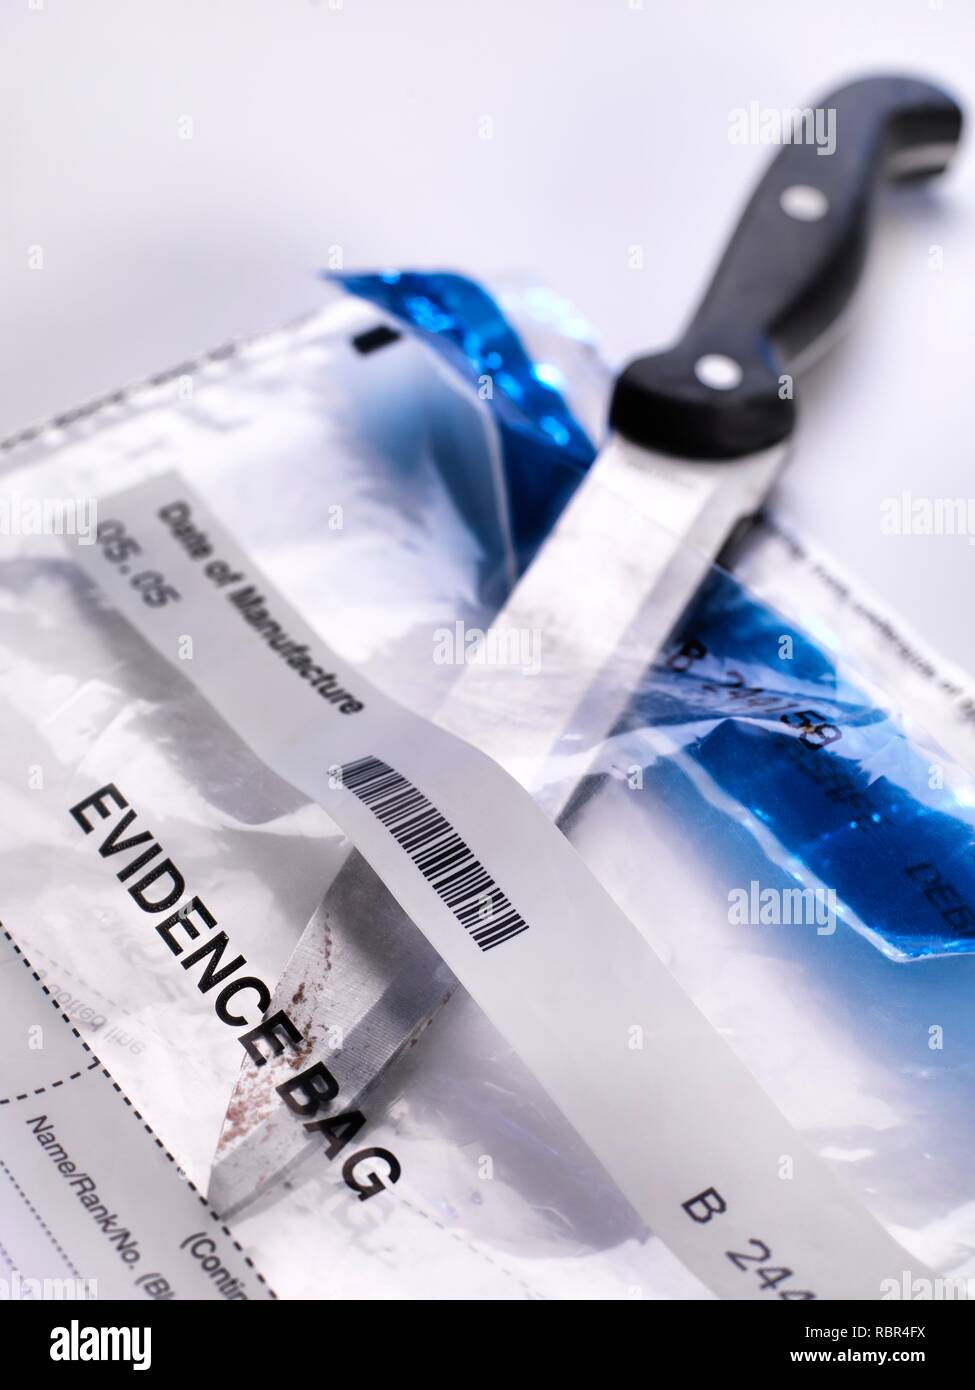 Forensische Beweise sammeln. Ein Messer zu Aufgewischt für die DNA (Desoxyribonukleinsäure) und andere forensische Tests. Stockfoto